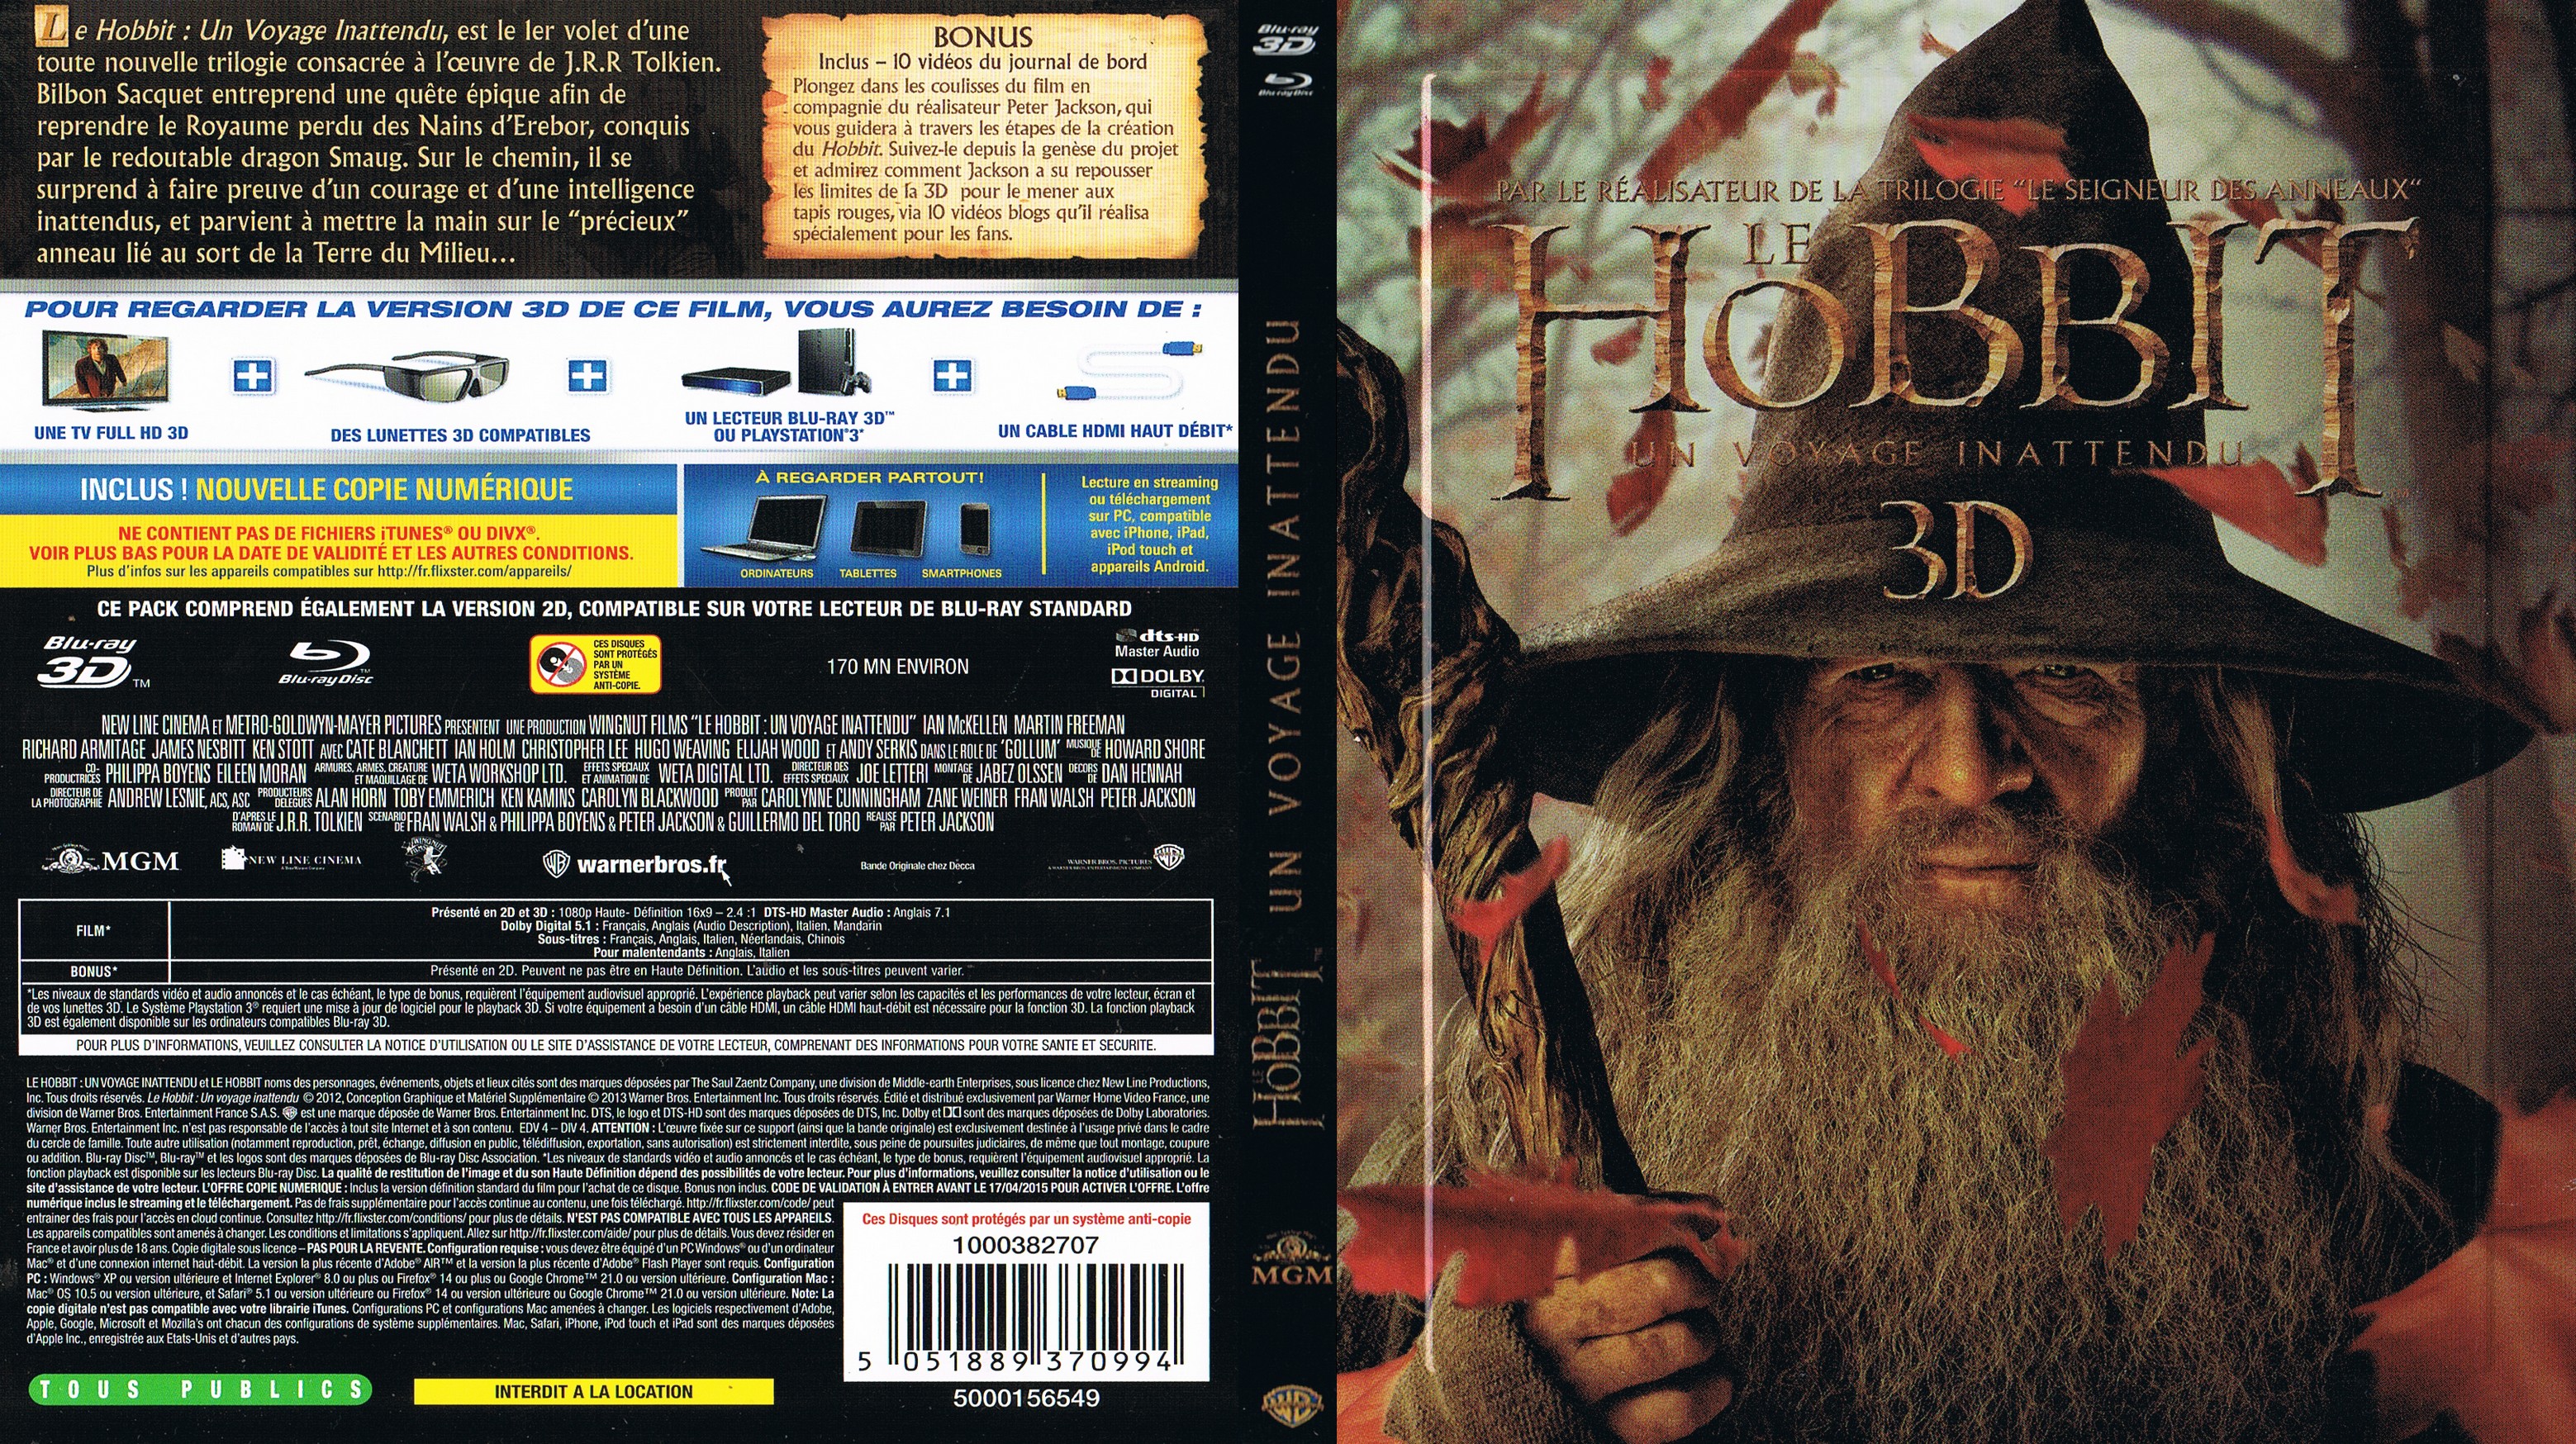 Jaquette DVD Le Hobbit un voyage inattendu 3D (BLU-RAY)